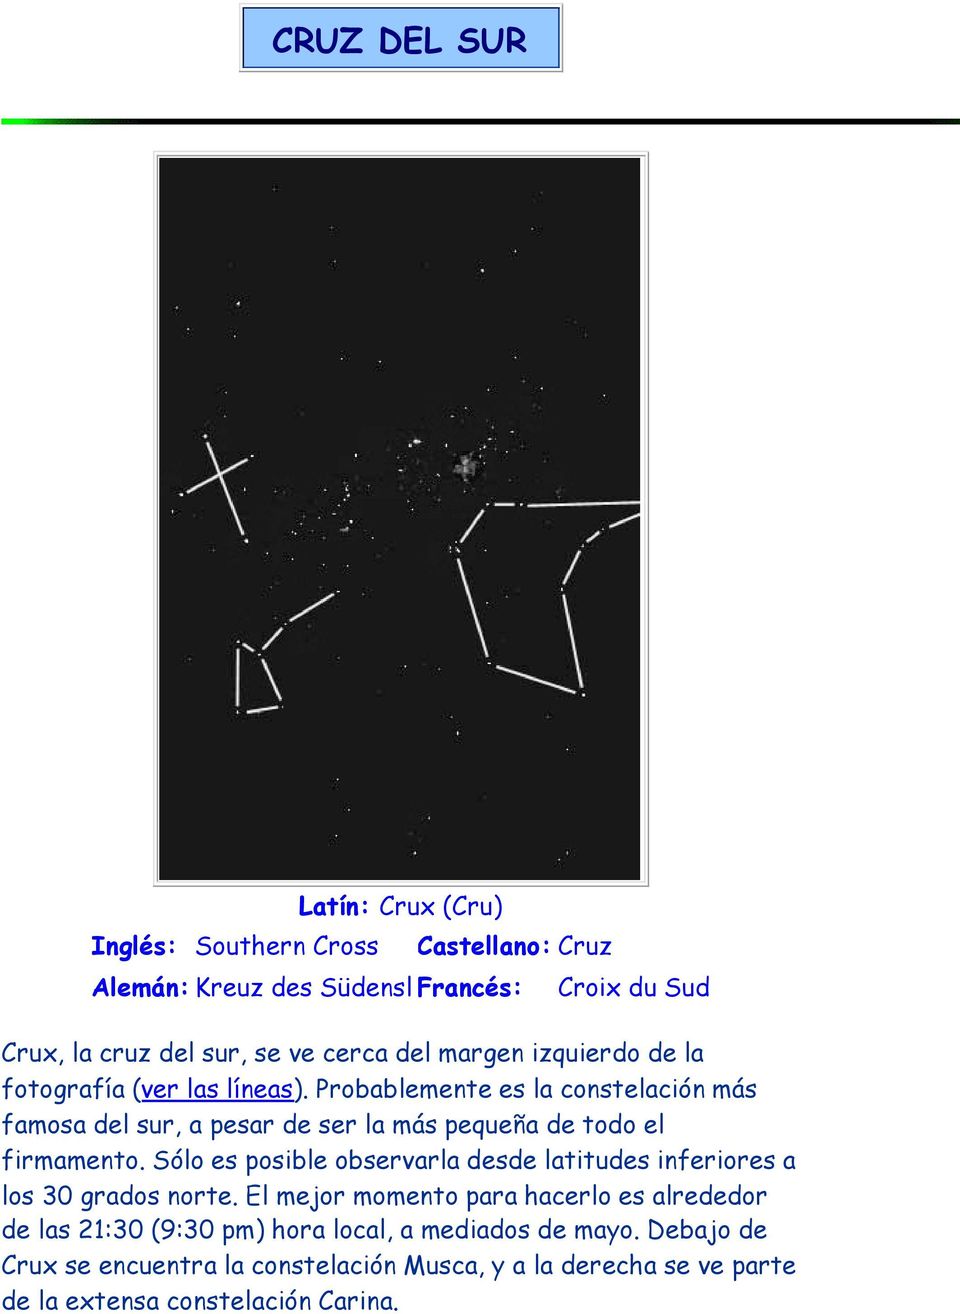 Probablemente es la constelación más famosa del sur, a pesar de ser la más pequeña de todo el firmamento.